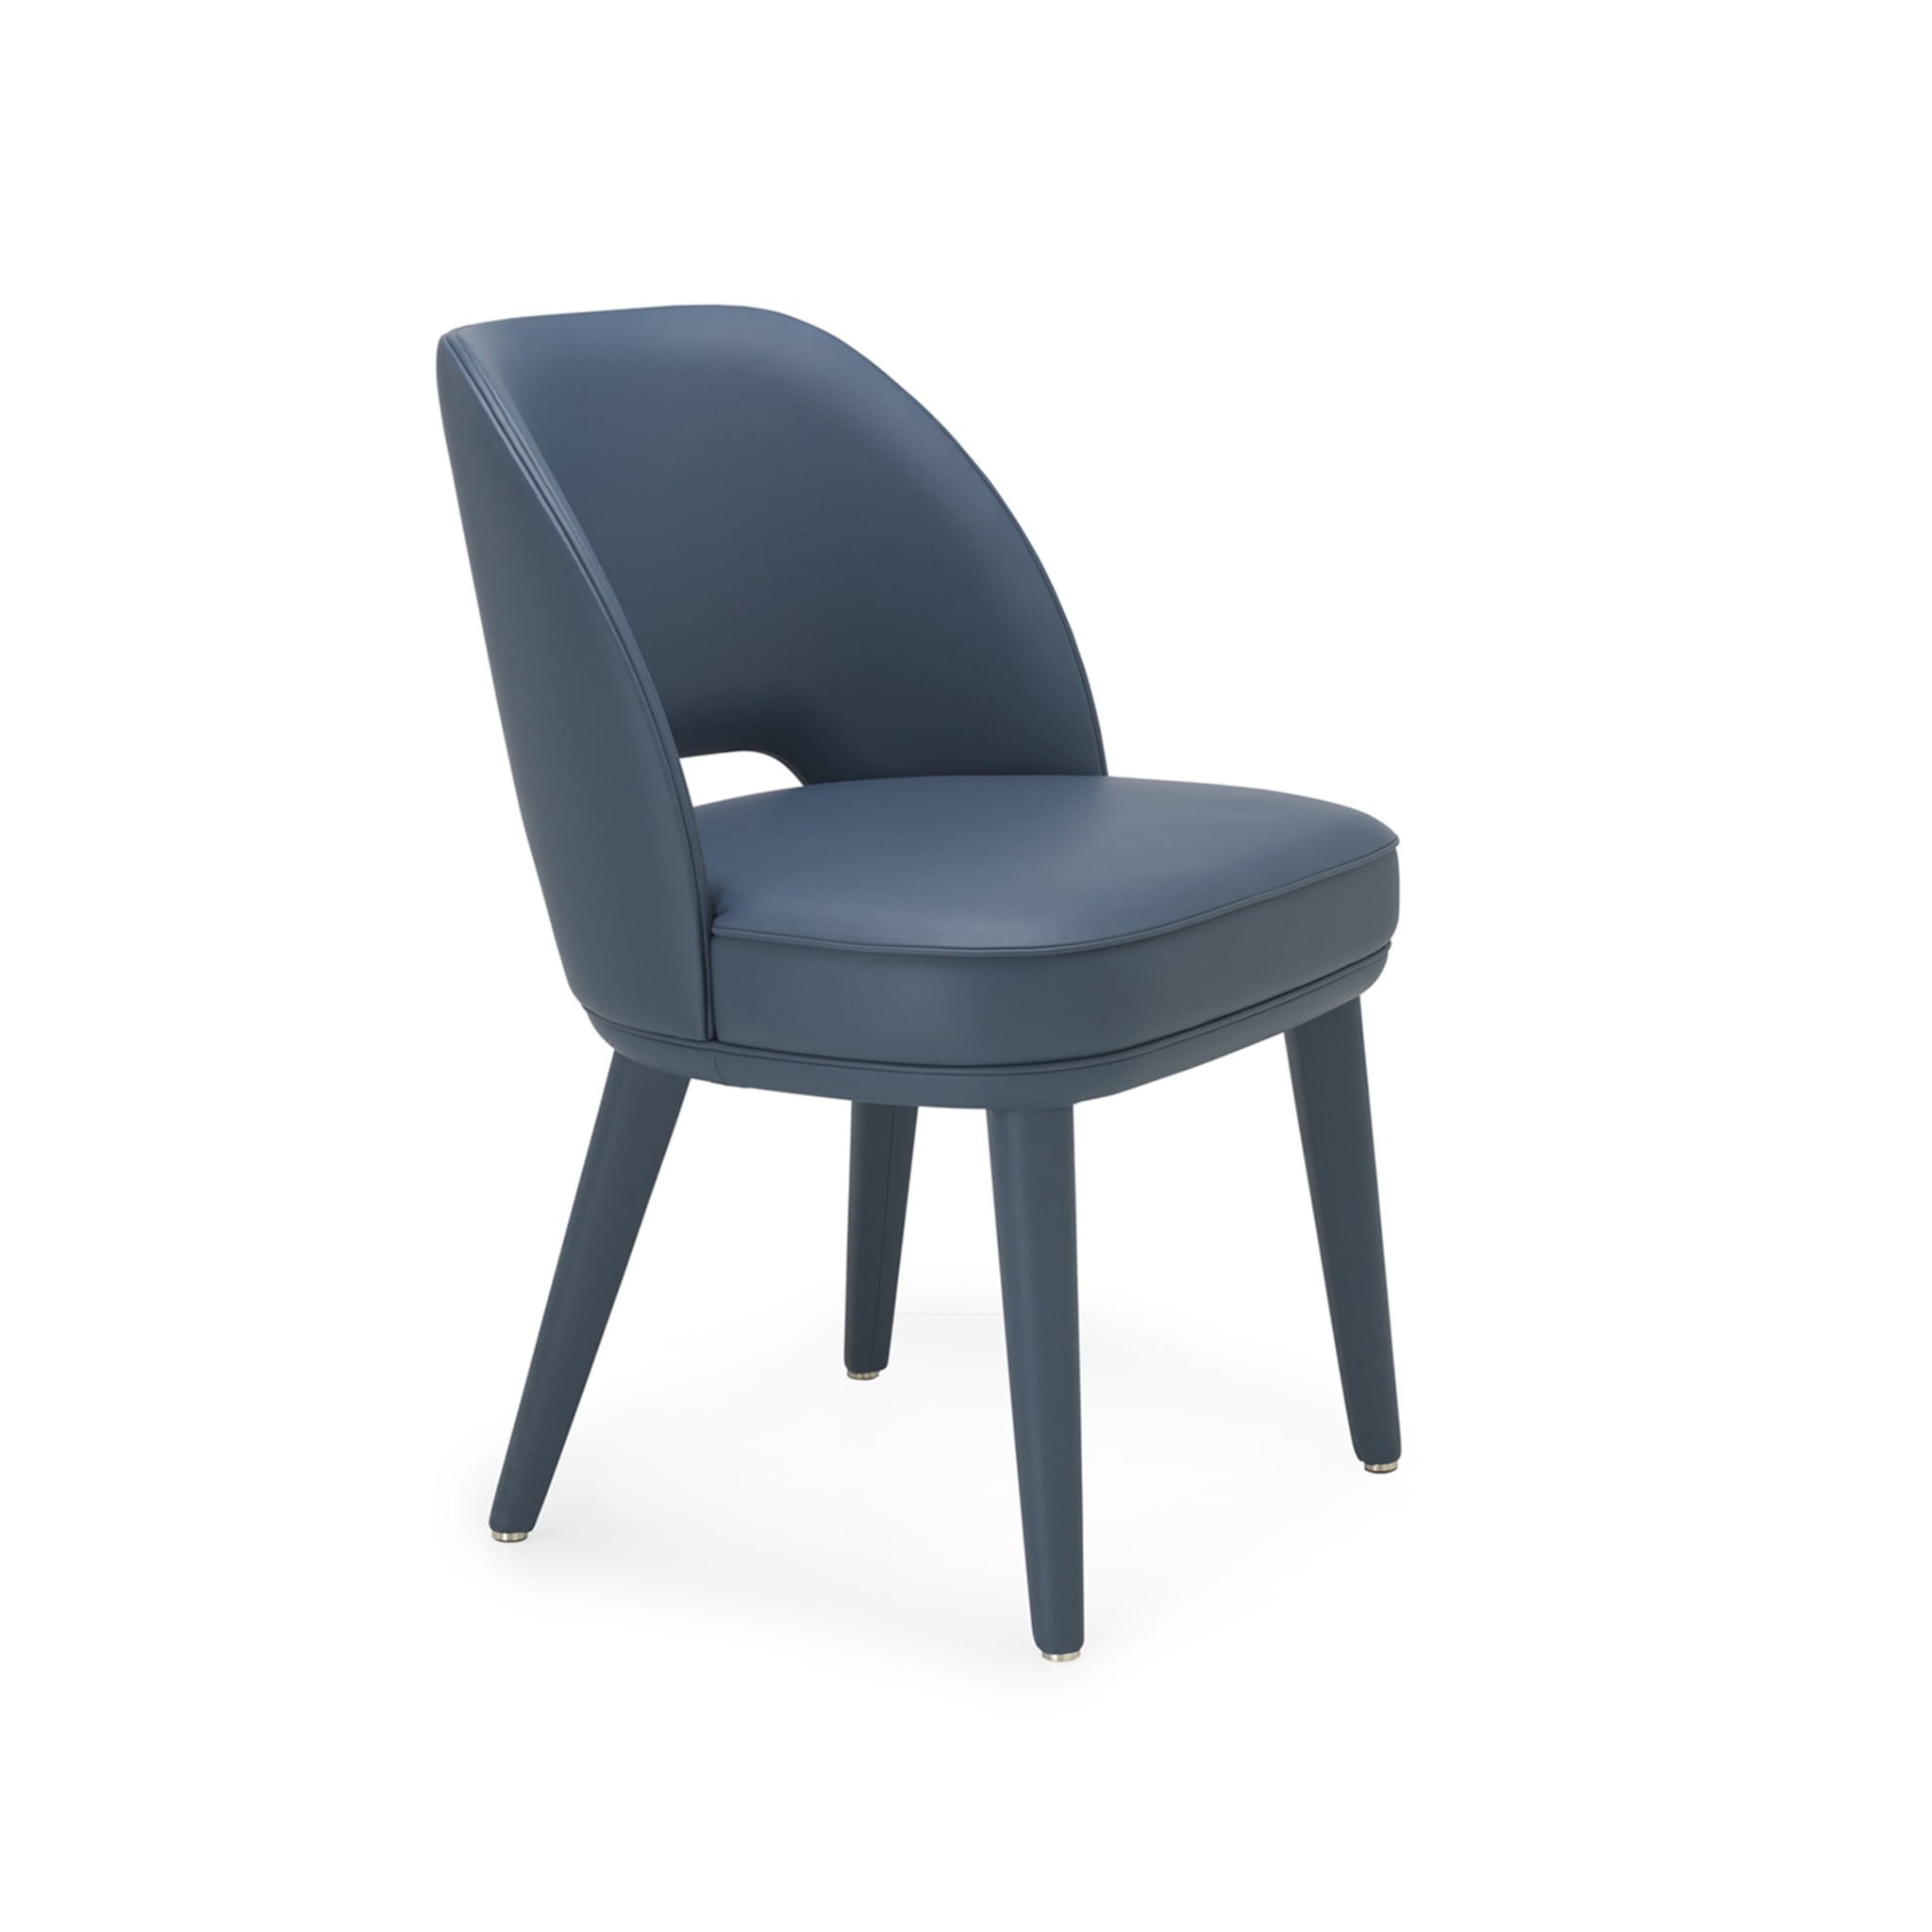 PENELOPE blauer Stuhl - Alternative Ansicht 1